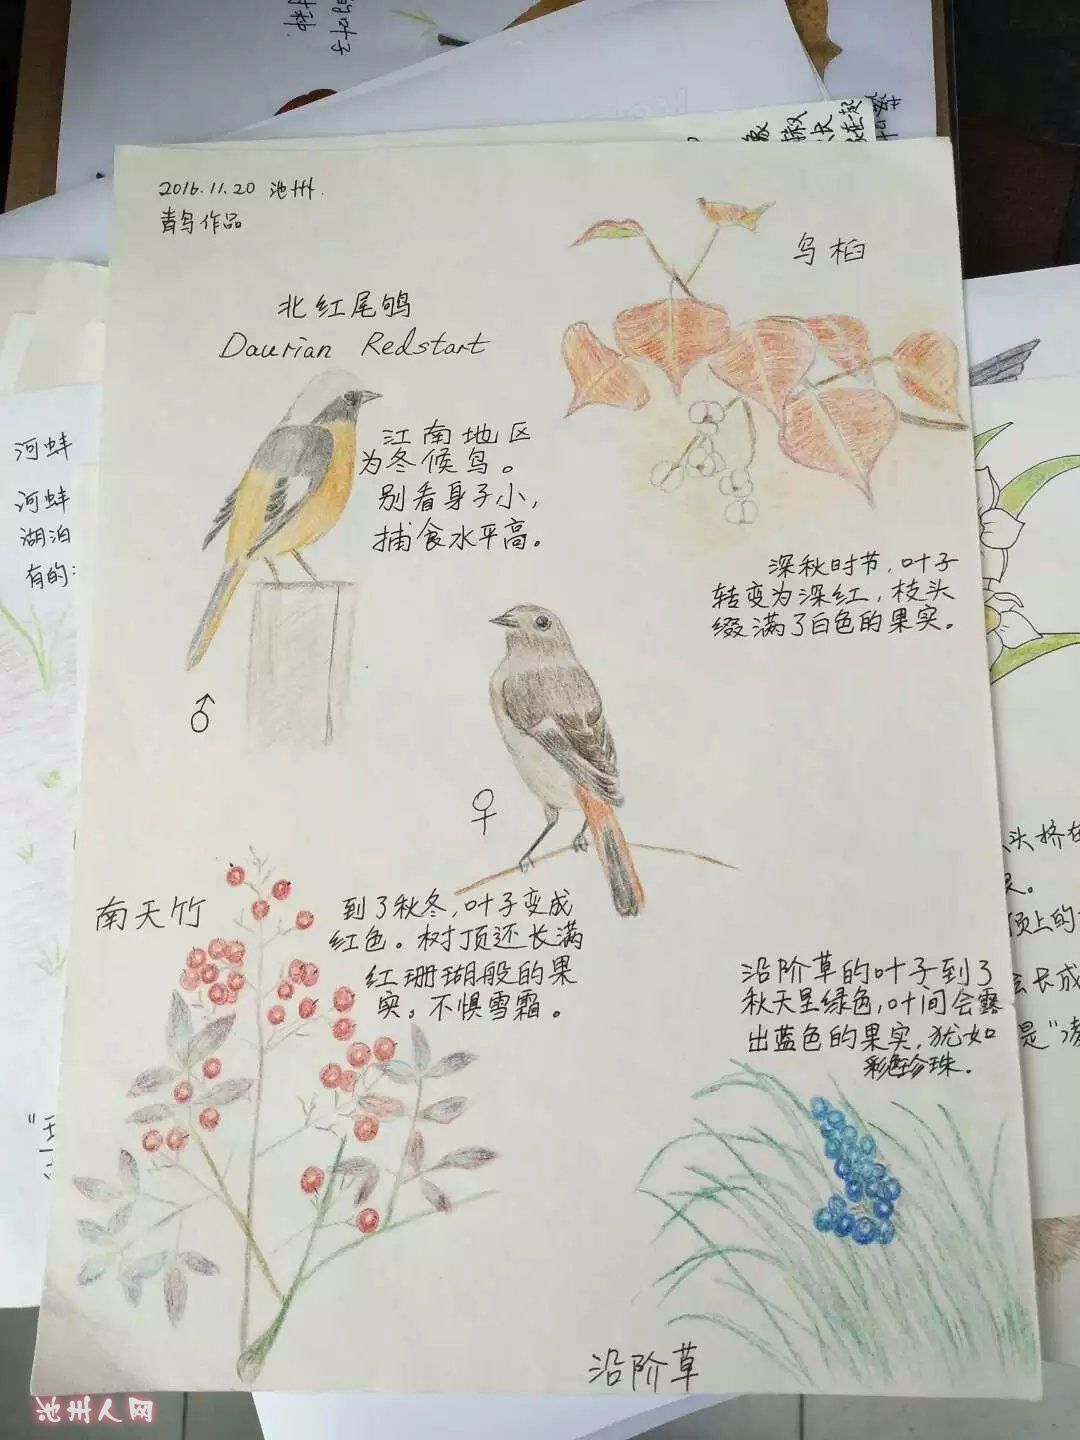 鸟类自然笔记大赛图片